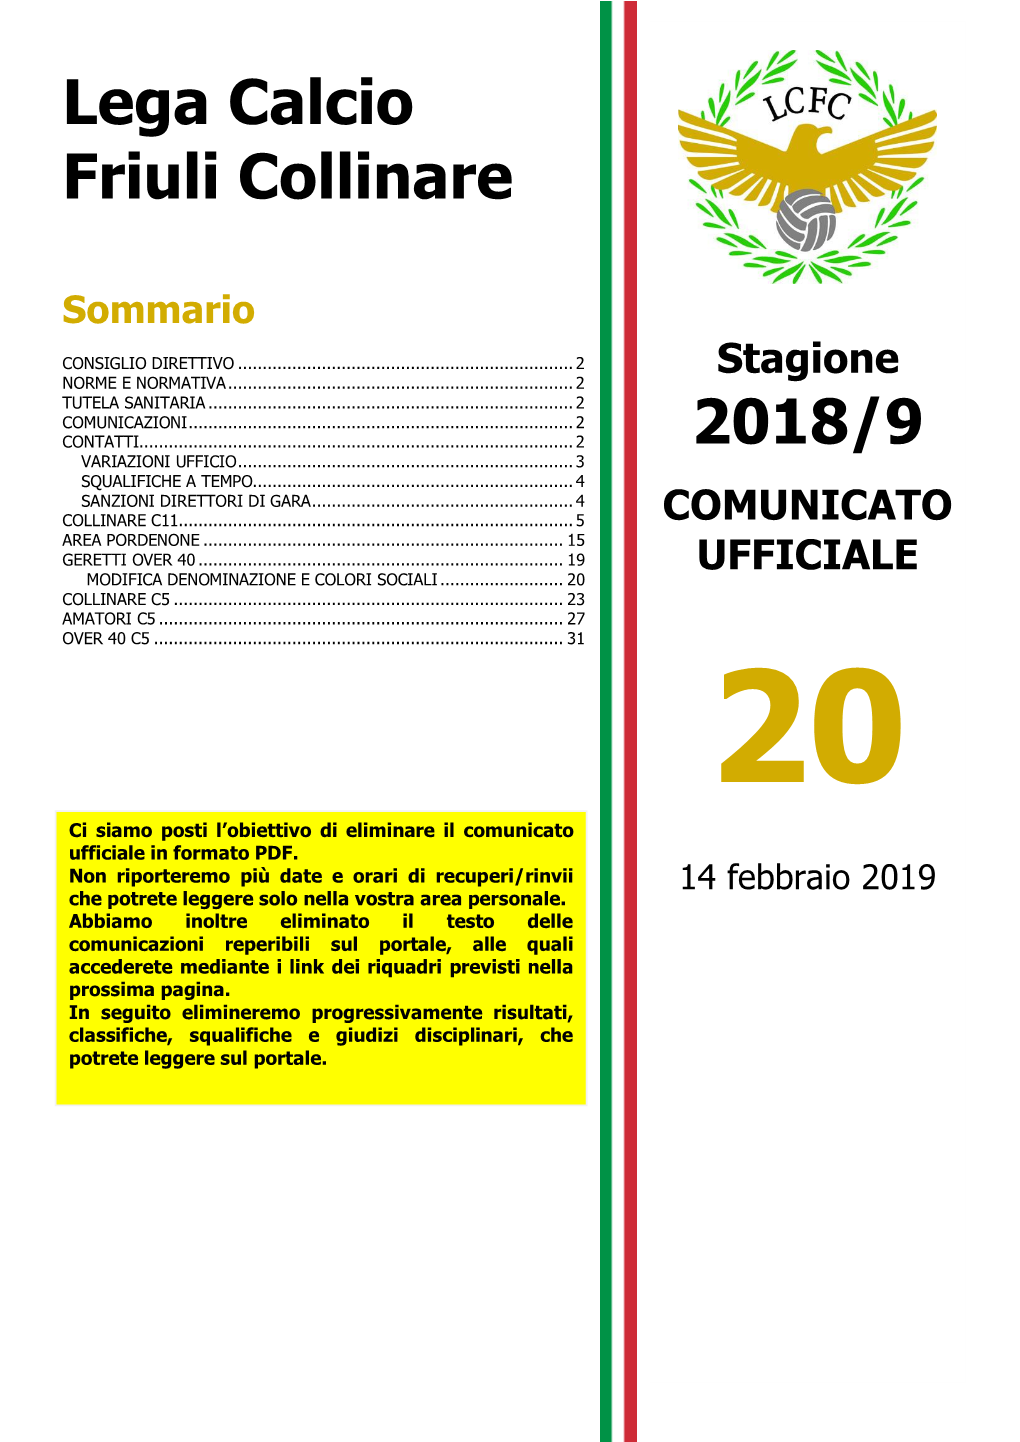 Lega Calcio Friuli Collinare 2018/9